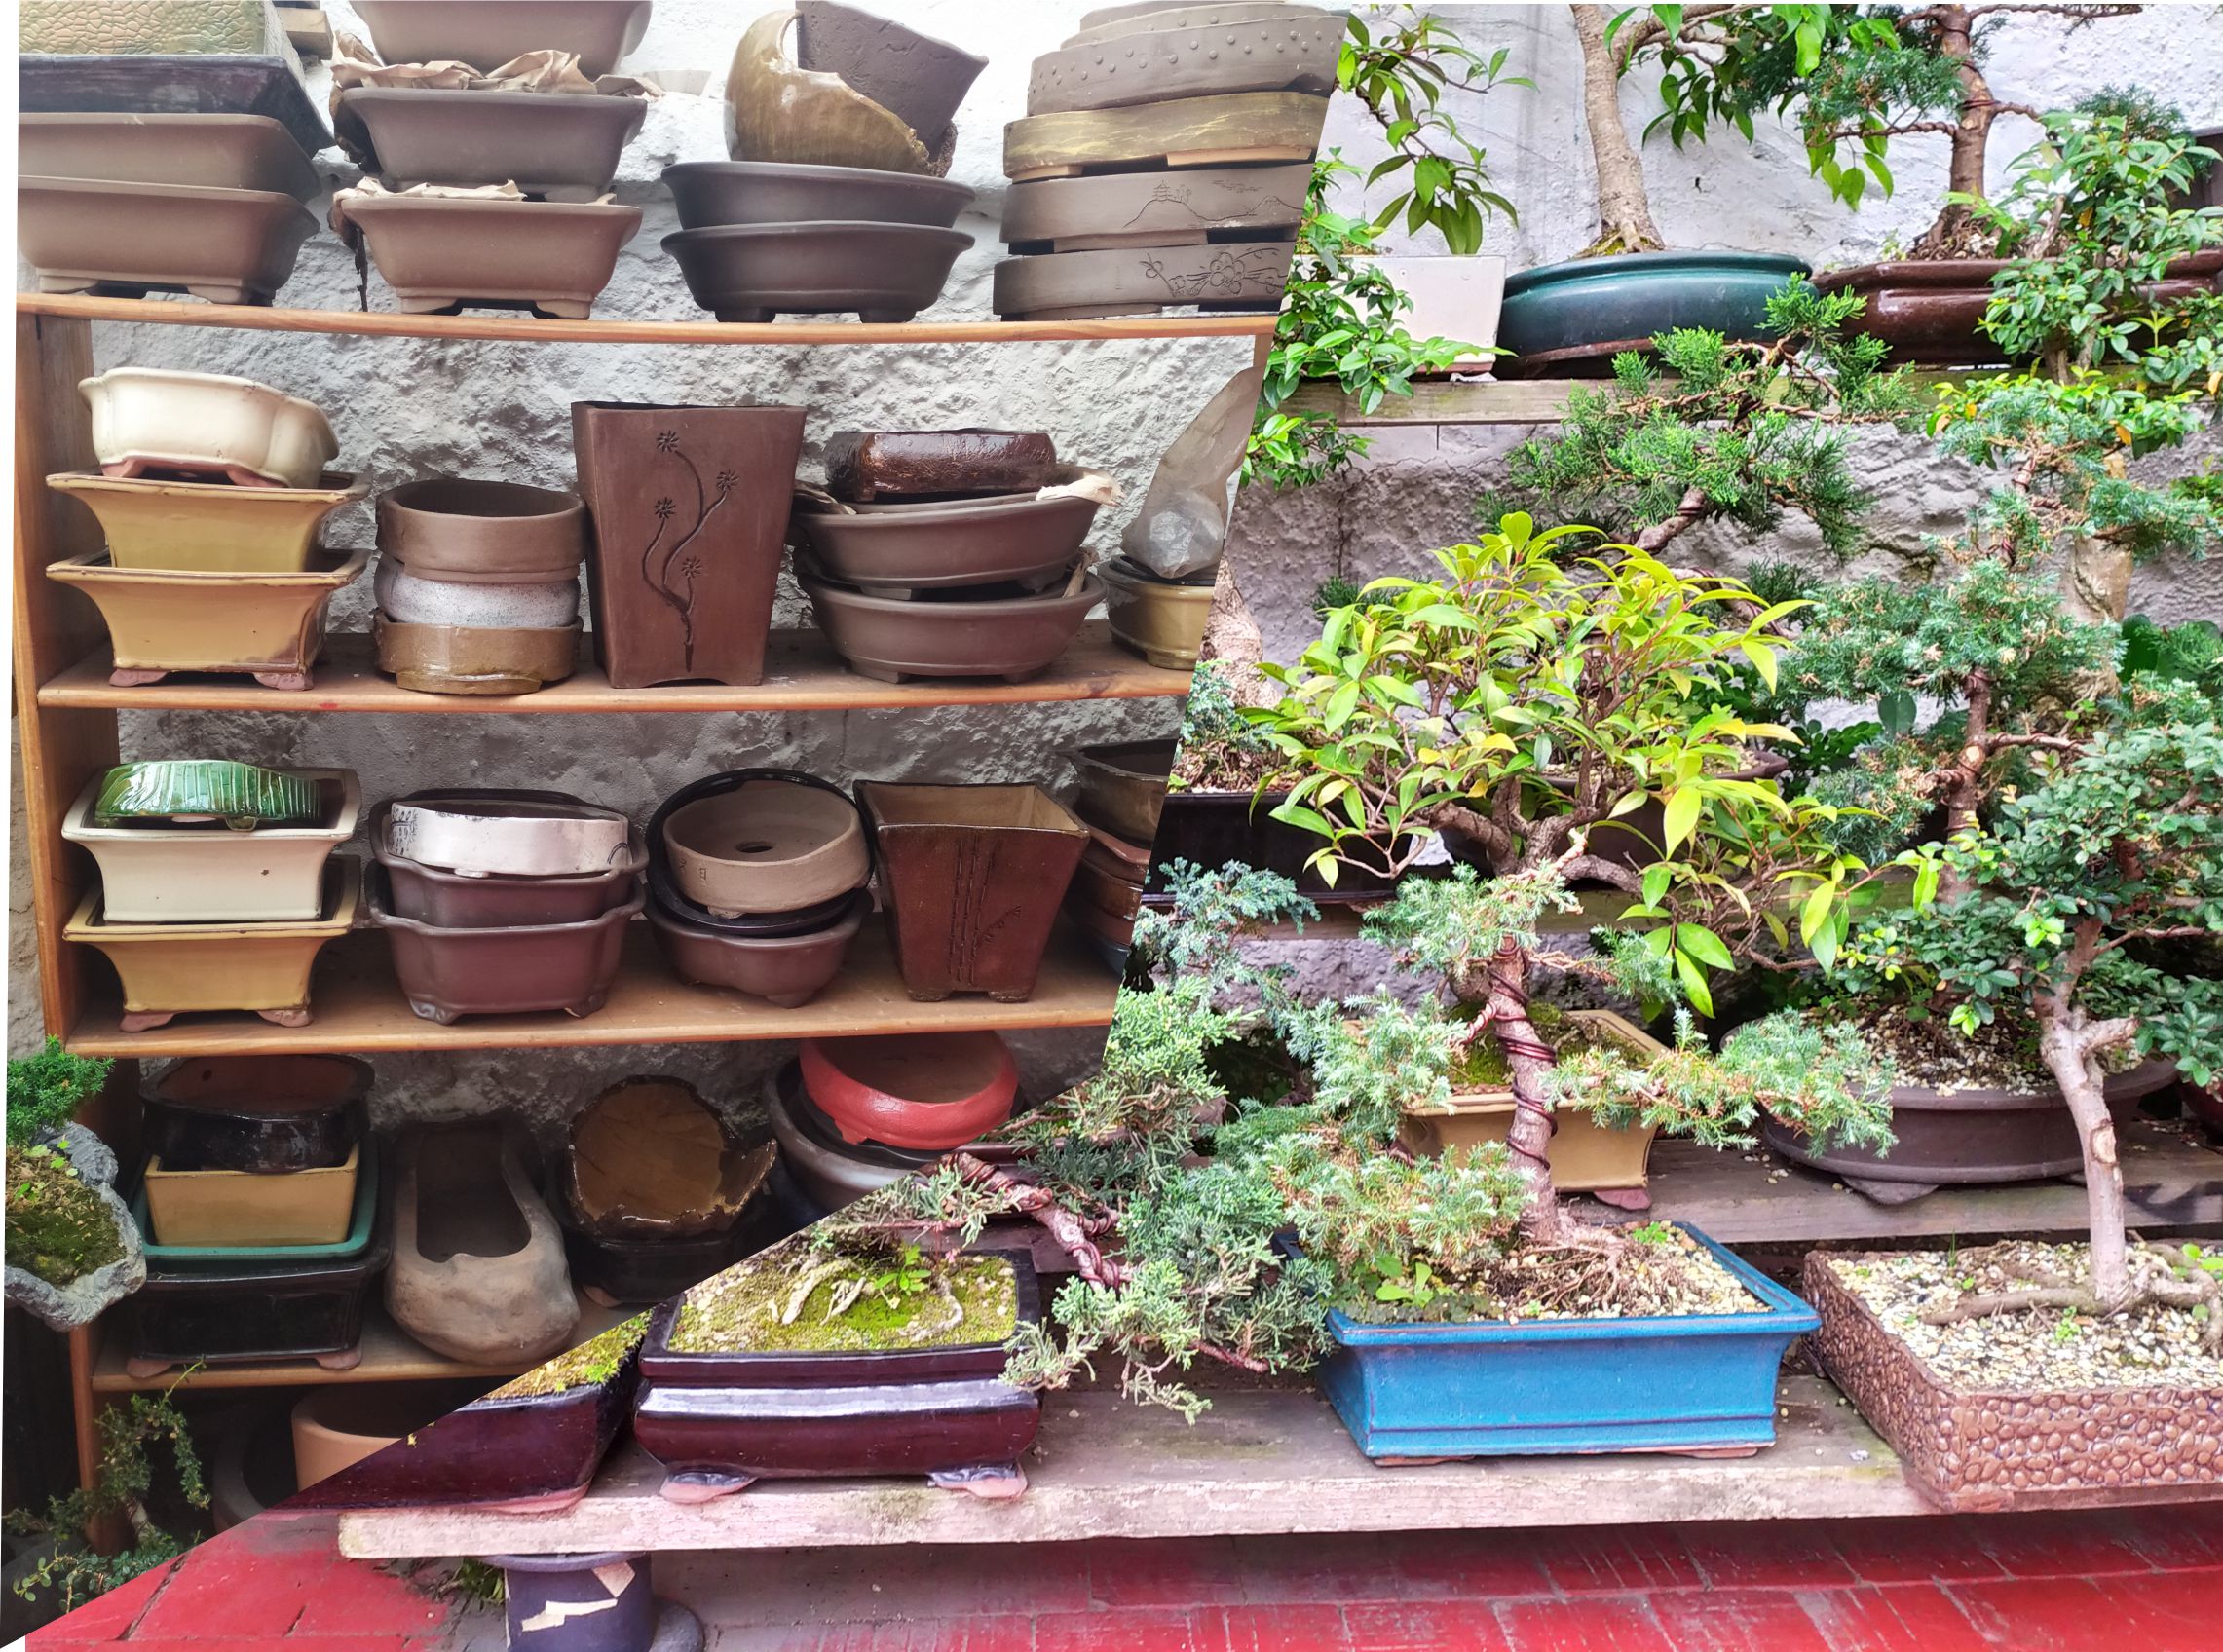 Credencial Caso tanque 盆栽 Mistura Colombia - Bonsai, servicio de venta y mantenimiento,  accesorios, herramientas, Pei jin, jardin zen, jardin japones.